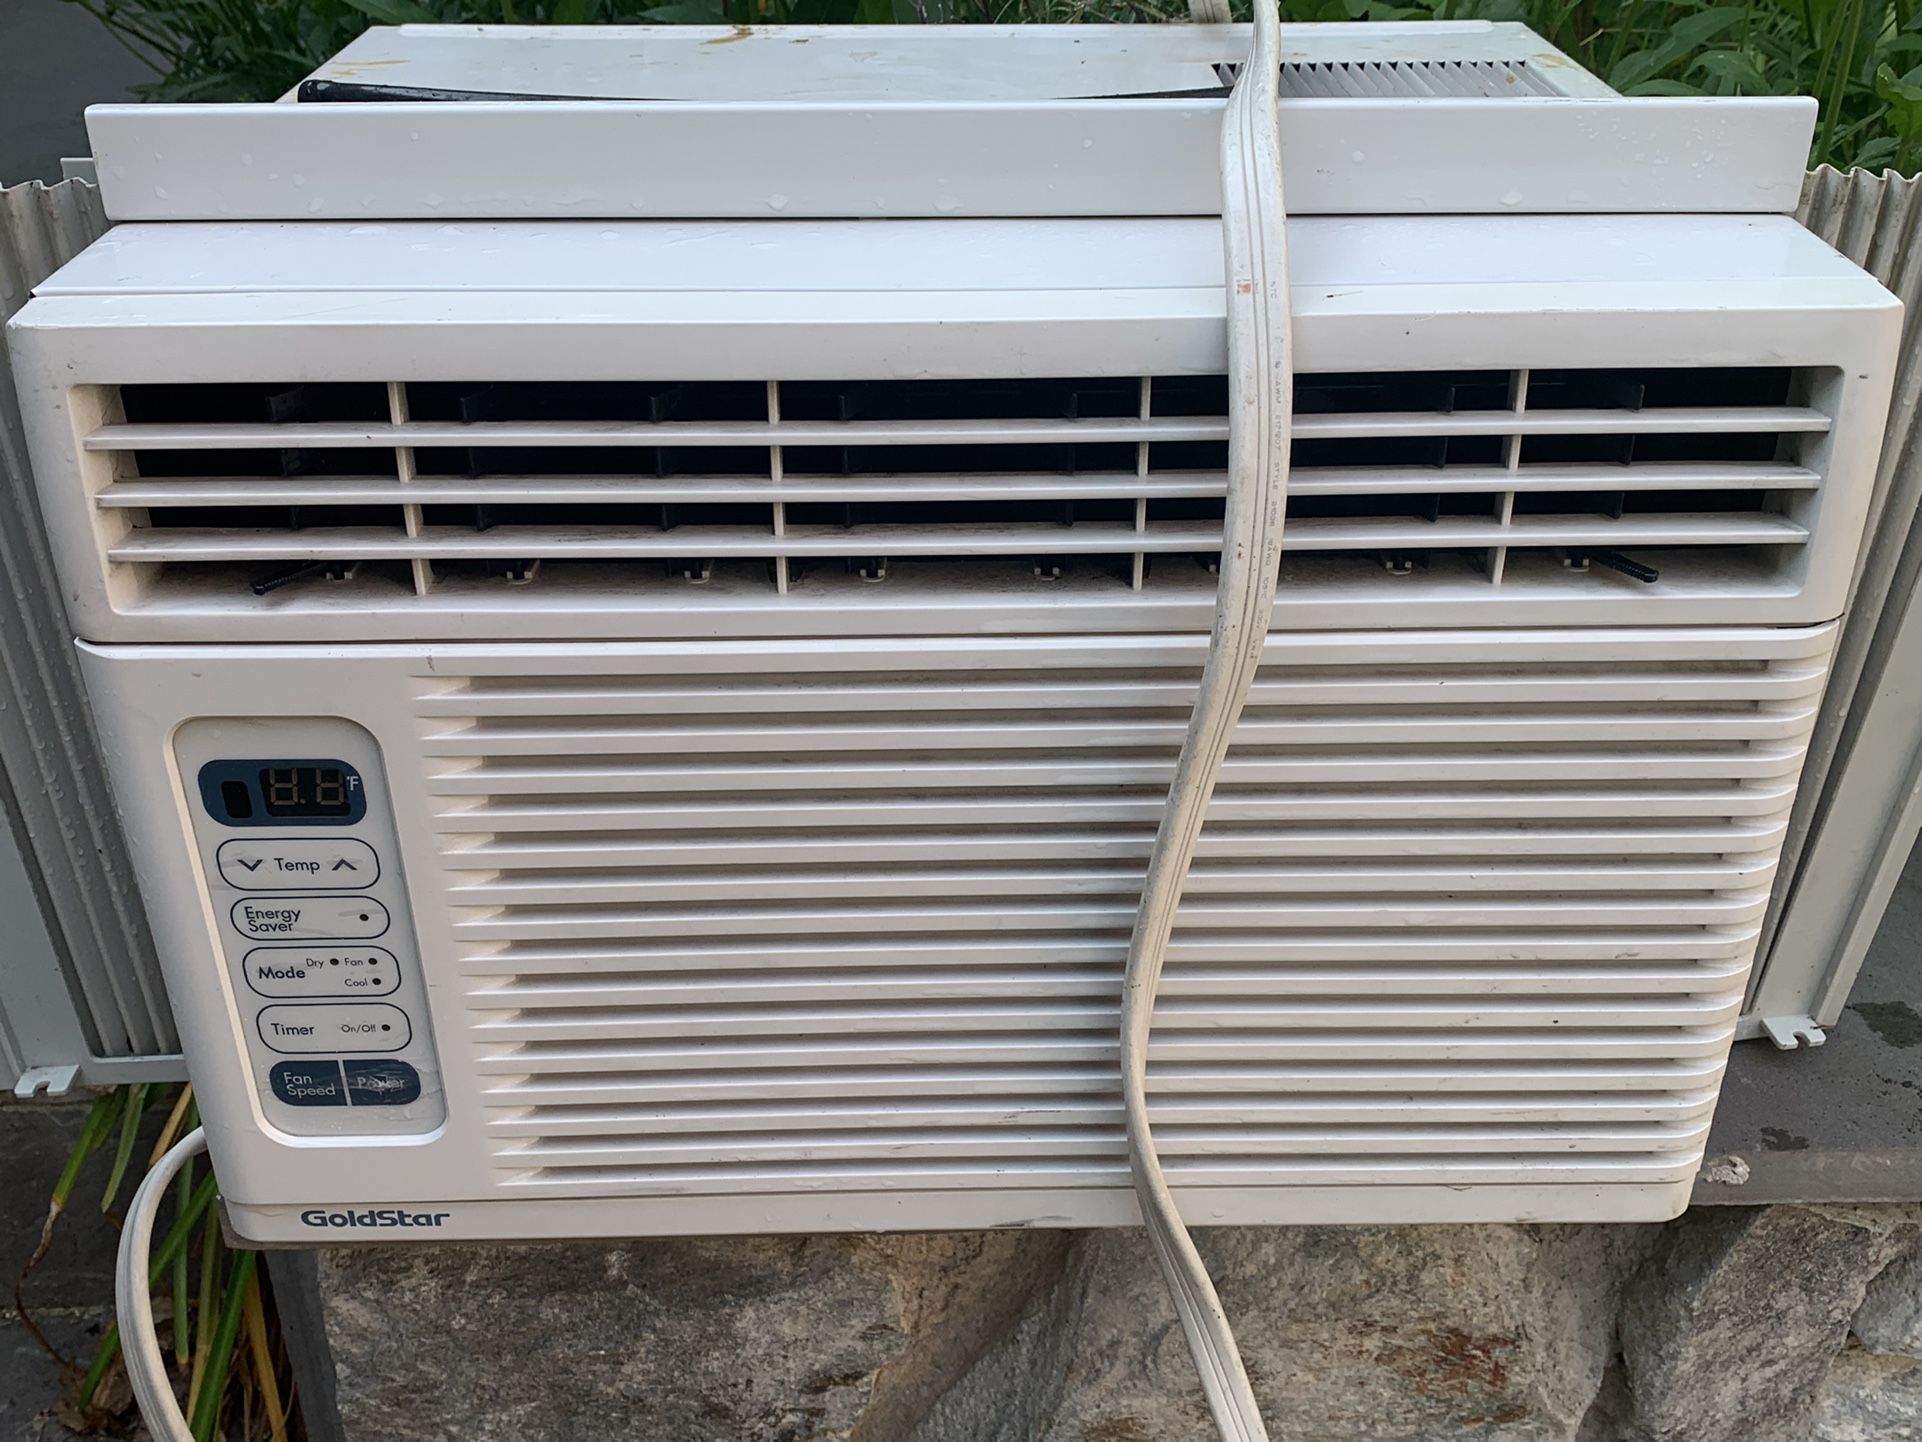 Goldstar/LG Air conditioner 